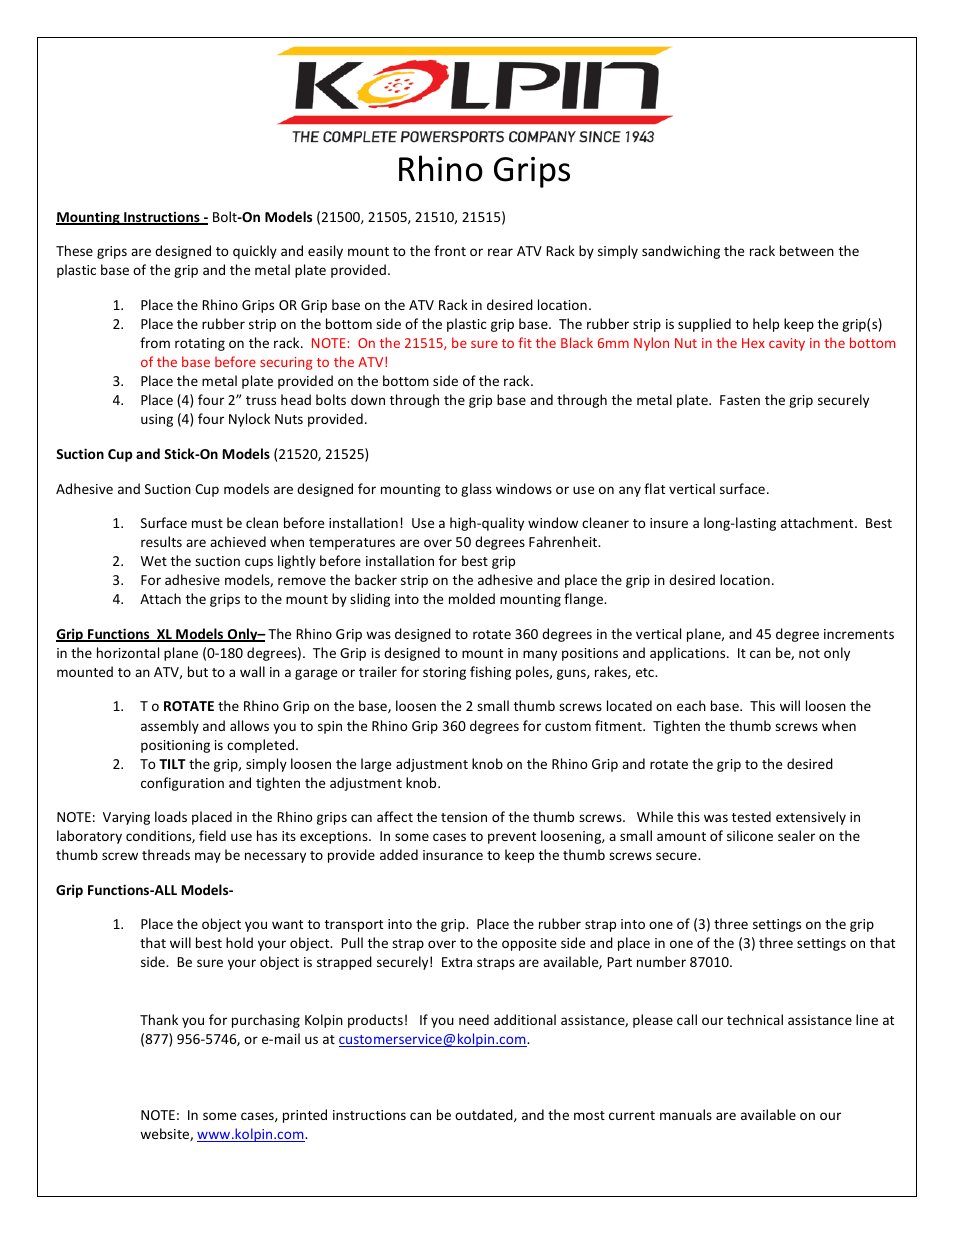 21505 – Rhino Grips